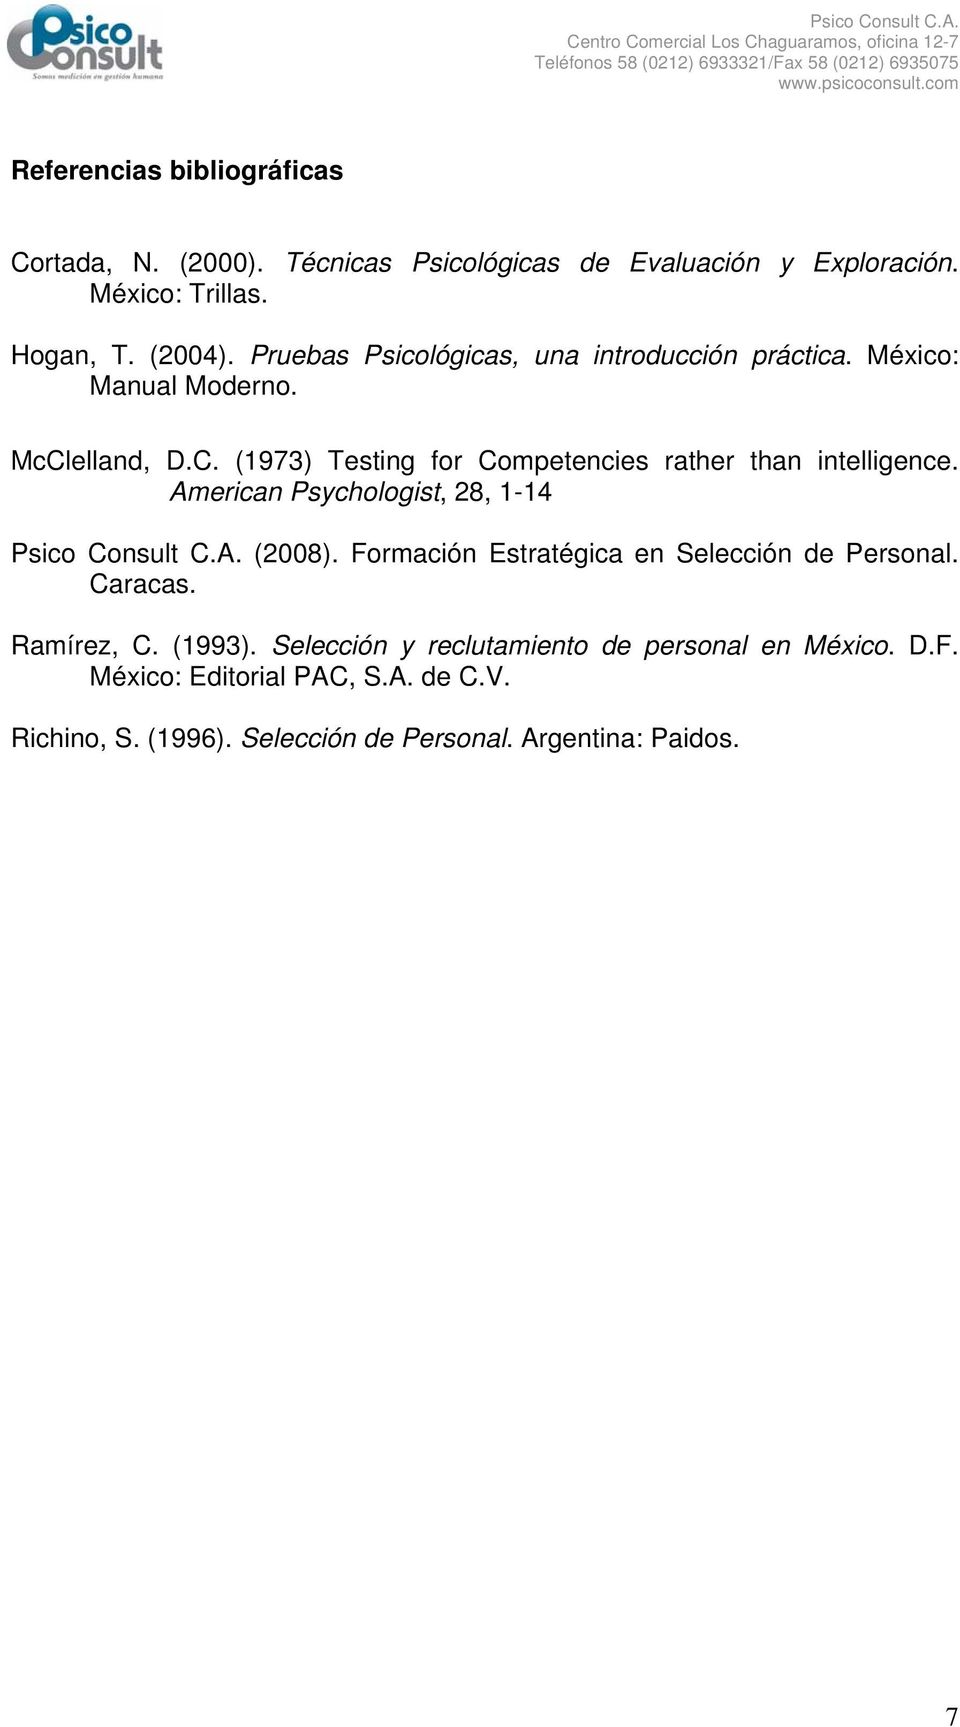 American Psychologist, 28, 1-14 (2008). Formación Estratégica en Selección de Personal. Caracas. Ramírez, C. (1993).